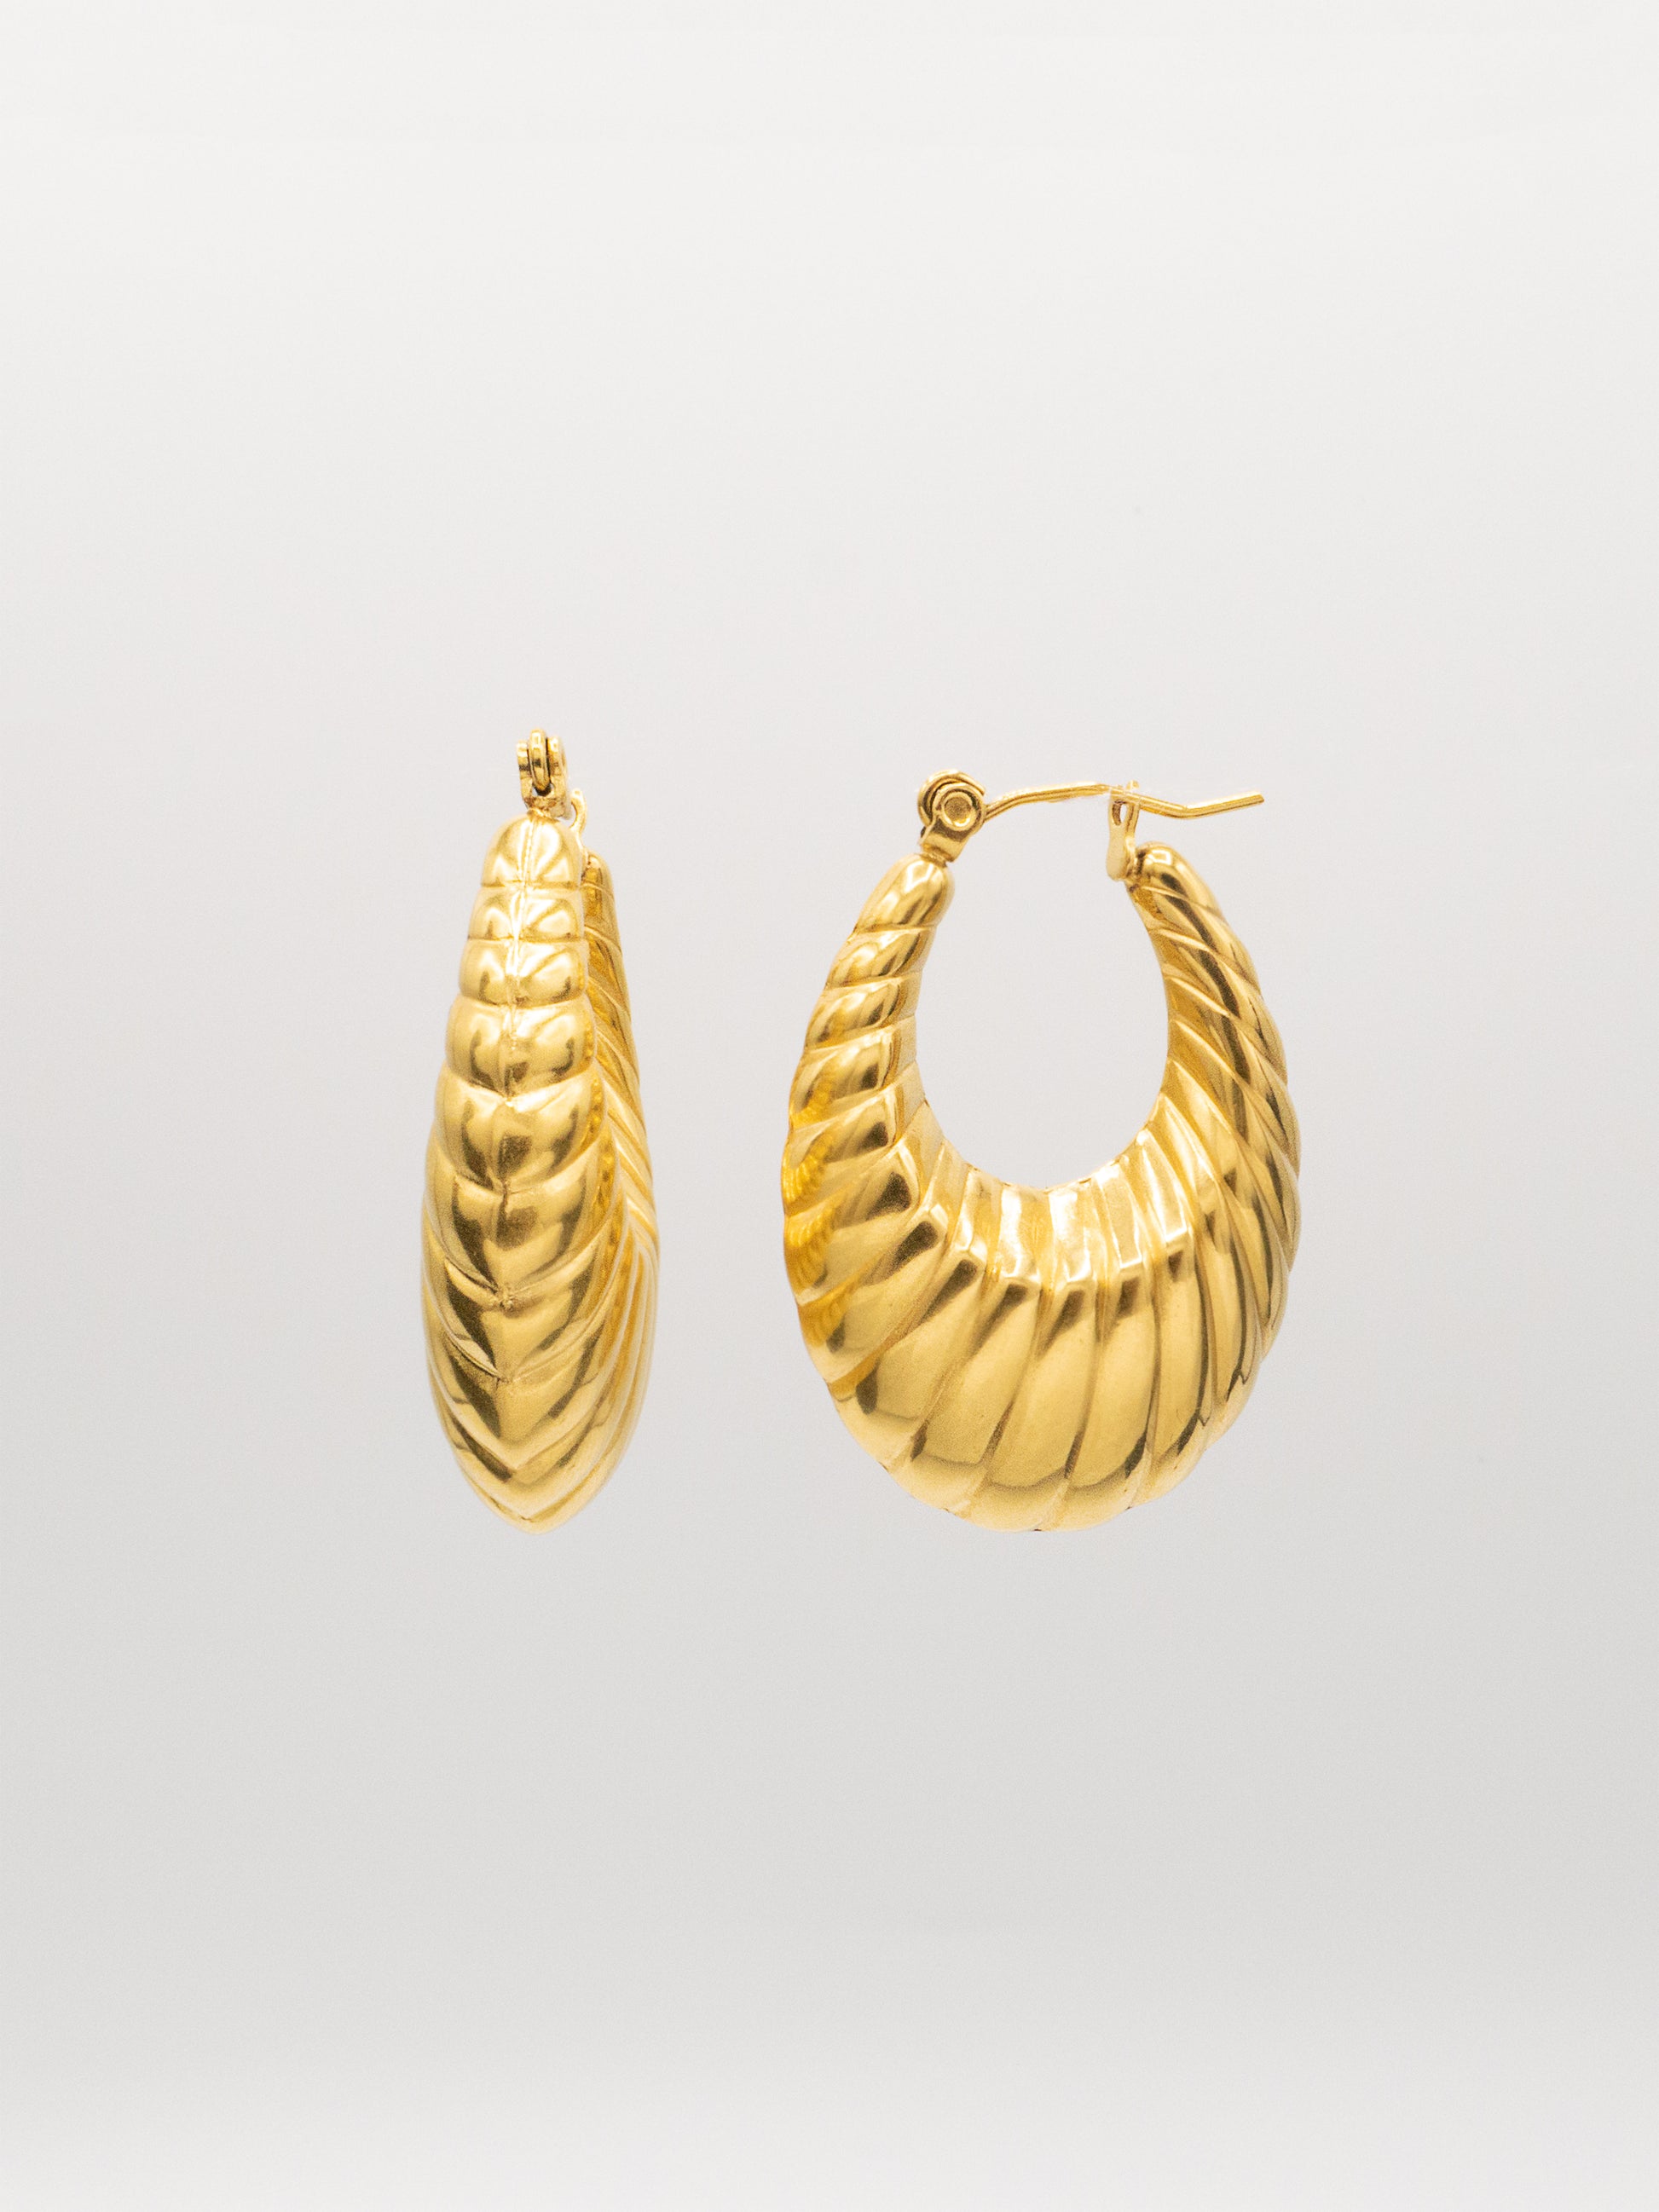 KADOMA HOOPS | 18K Gold - LILÈ - Earring - LILÈ - online jewellery store - jewelry online - affordable jewellery online Australia